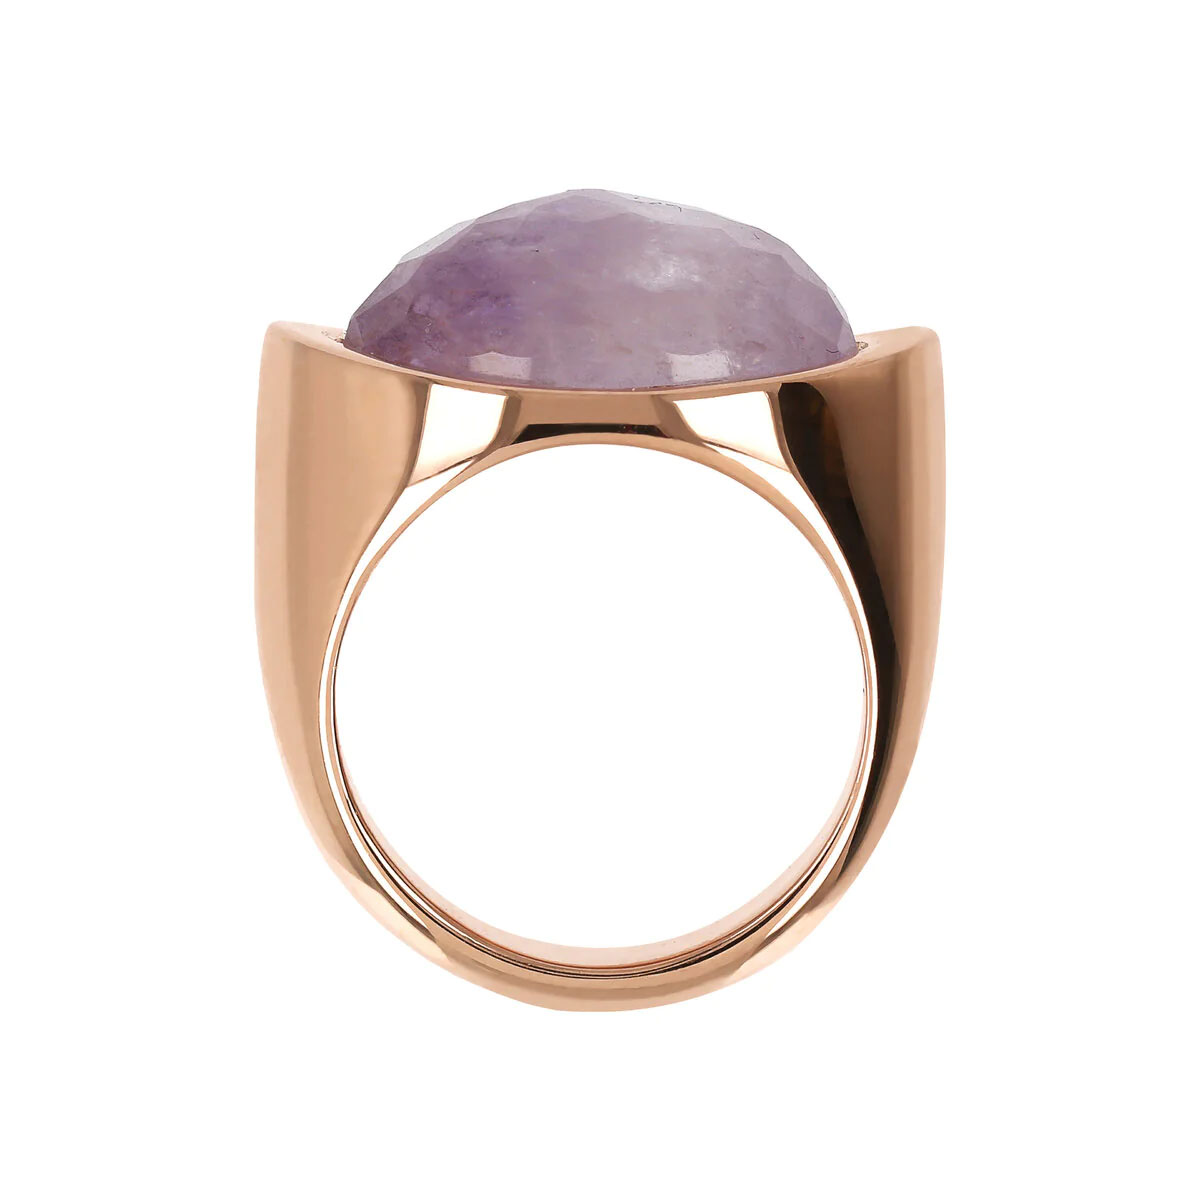 anello donna oro rosa con pietra ametista viola ovale bronzallure wsbz02151.aml